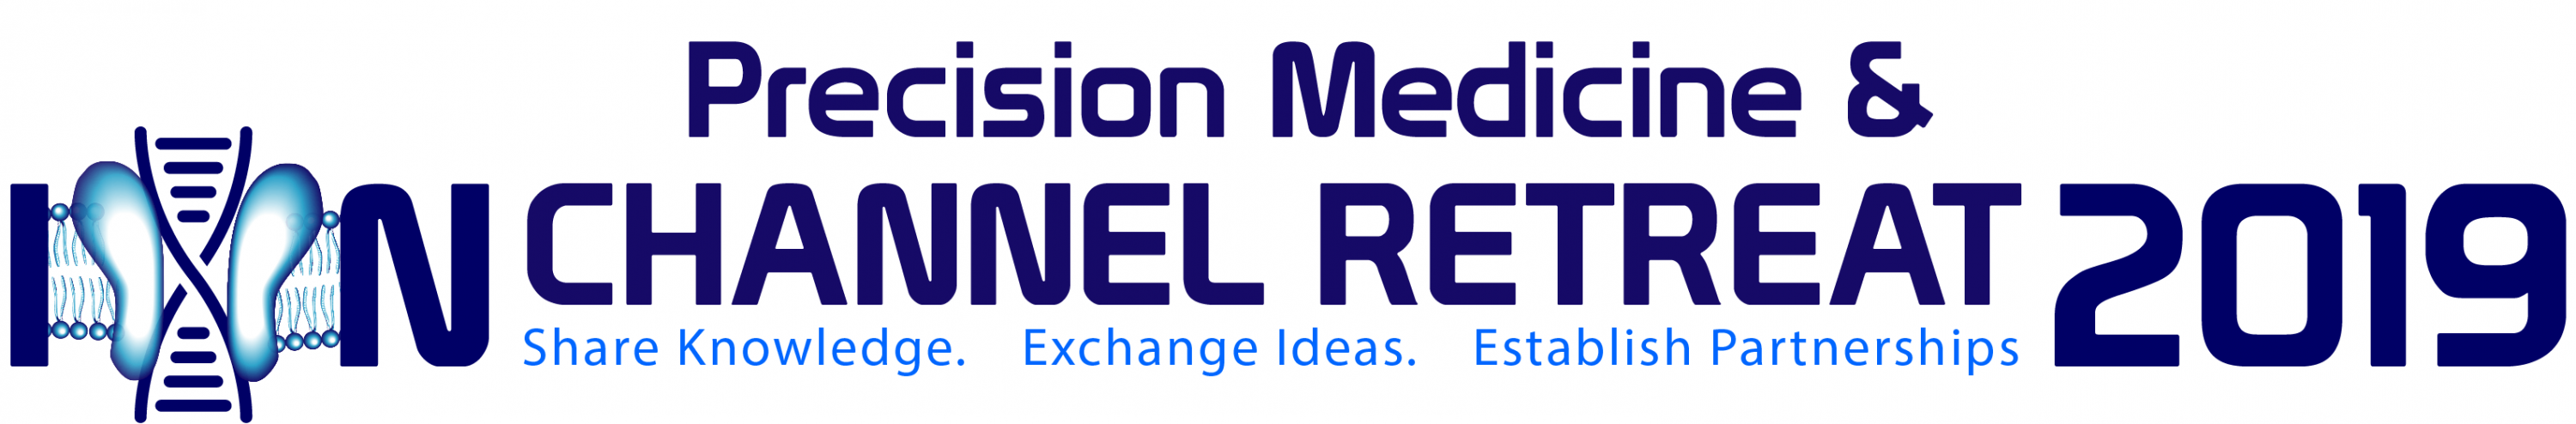 Precision Medicine & ION Channel Retreat 2019 logo